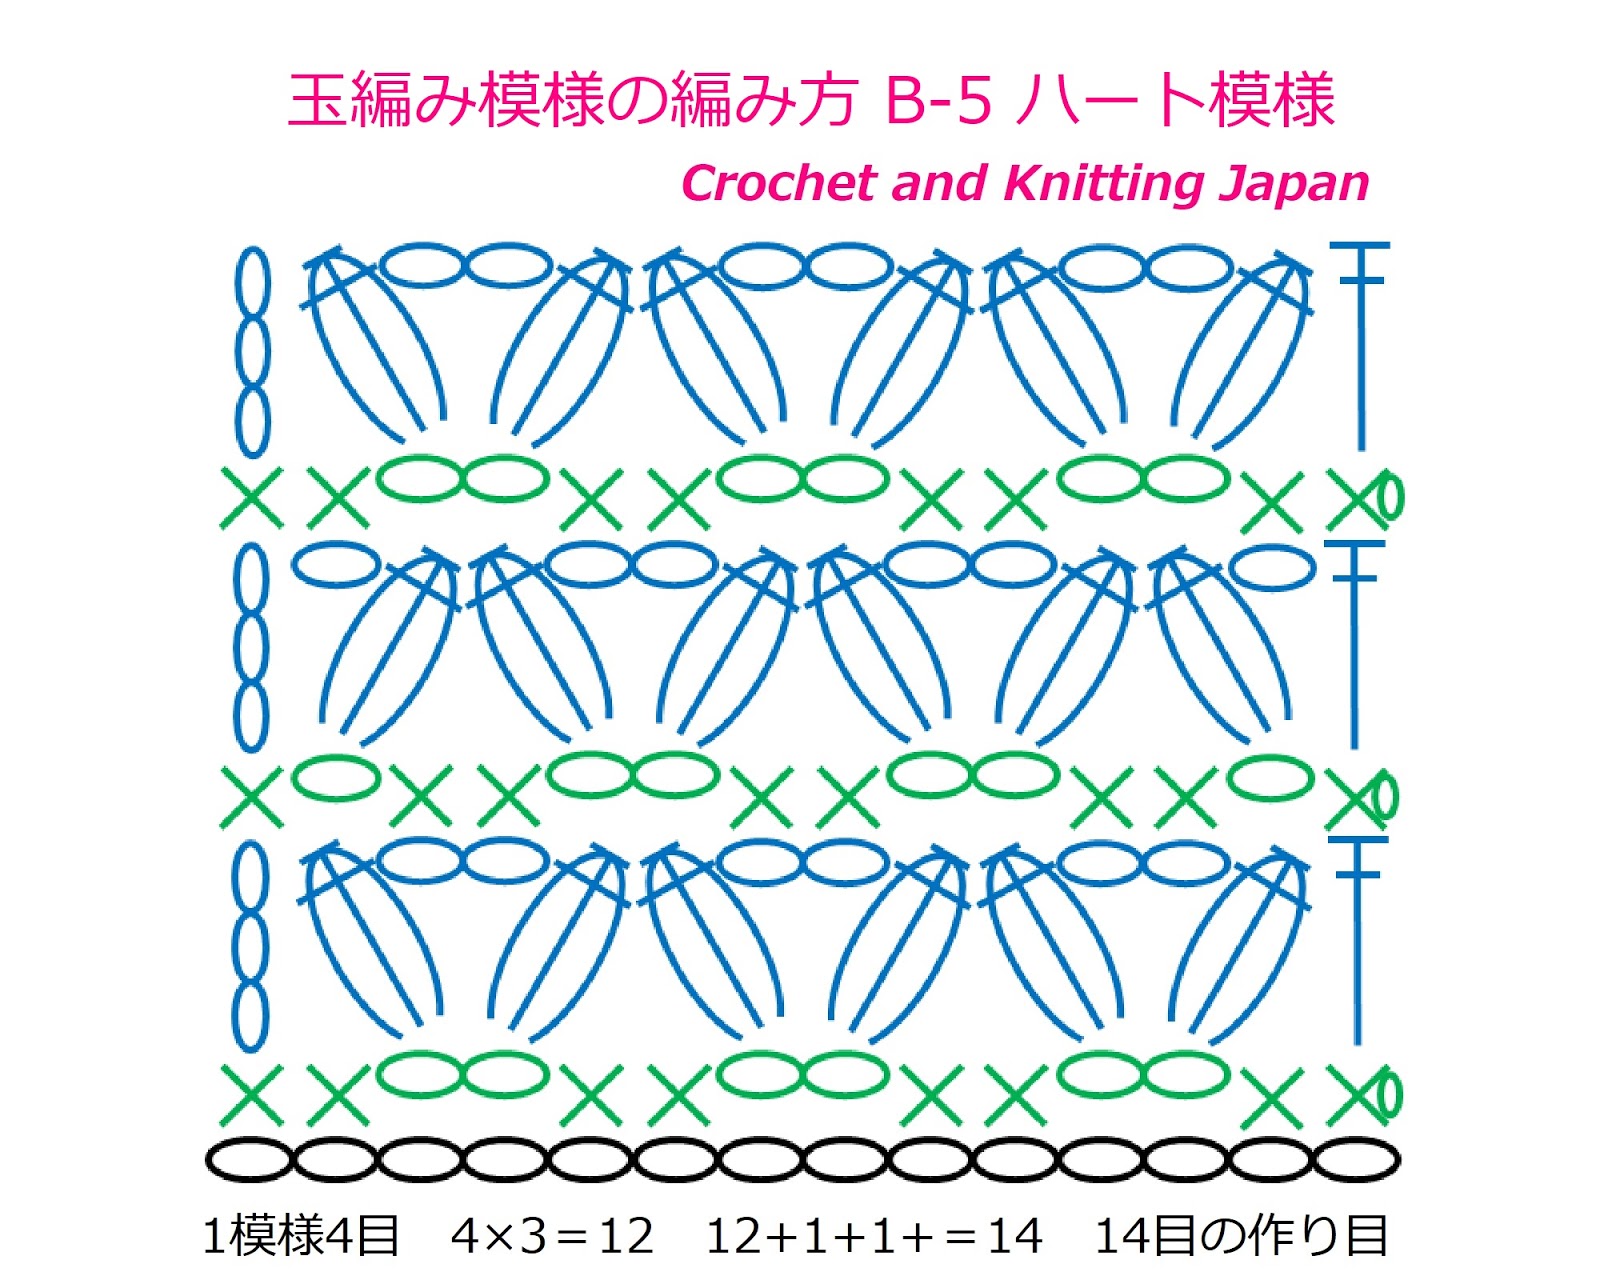 かぎ編み Crochet Japan クロッシェジャパン 玉編み模様の編み方 B 5 ハート模様 Crochet Cluster Stitch Crochet And Knitting Japan